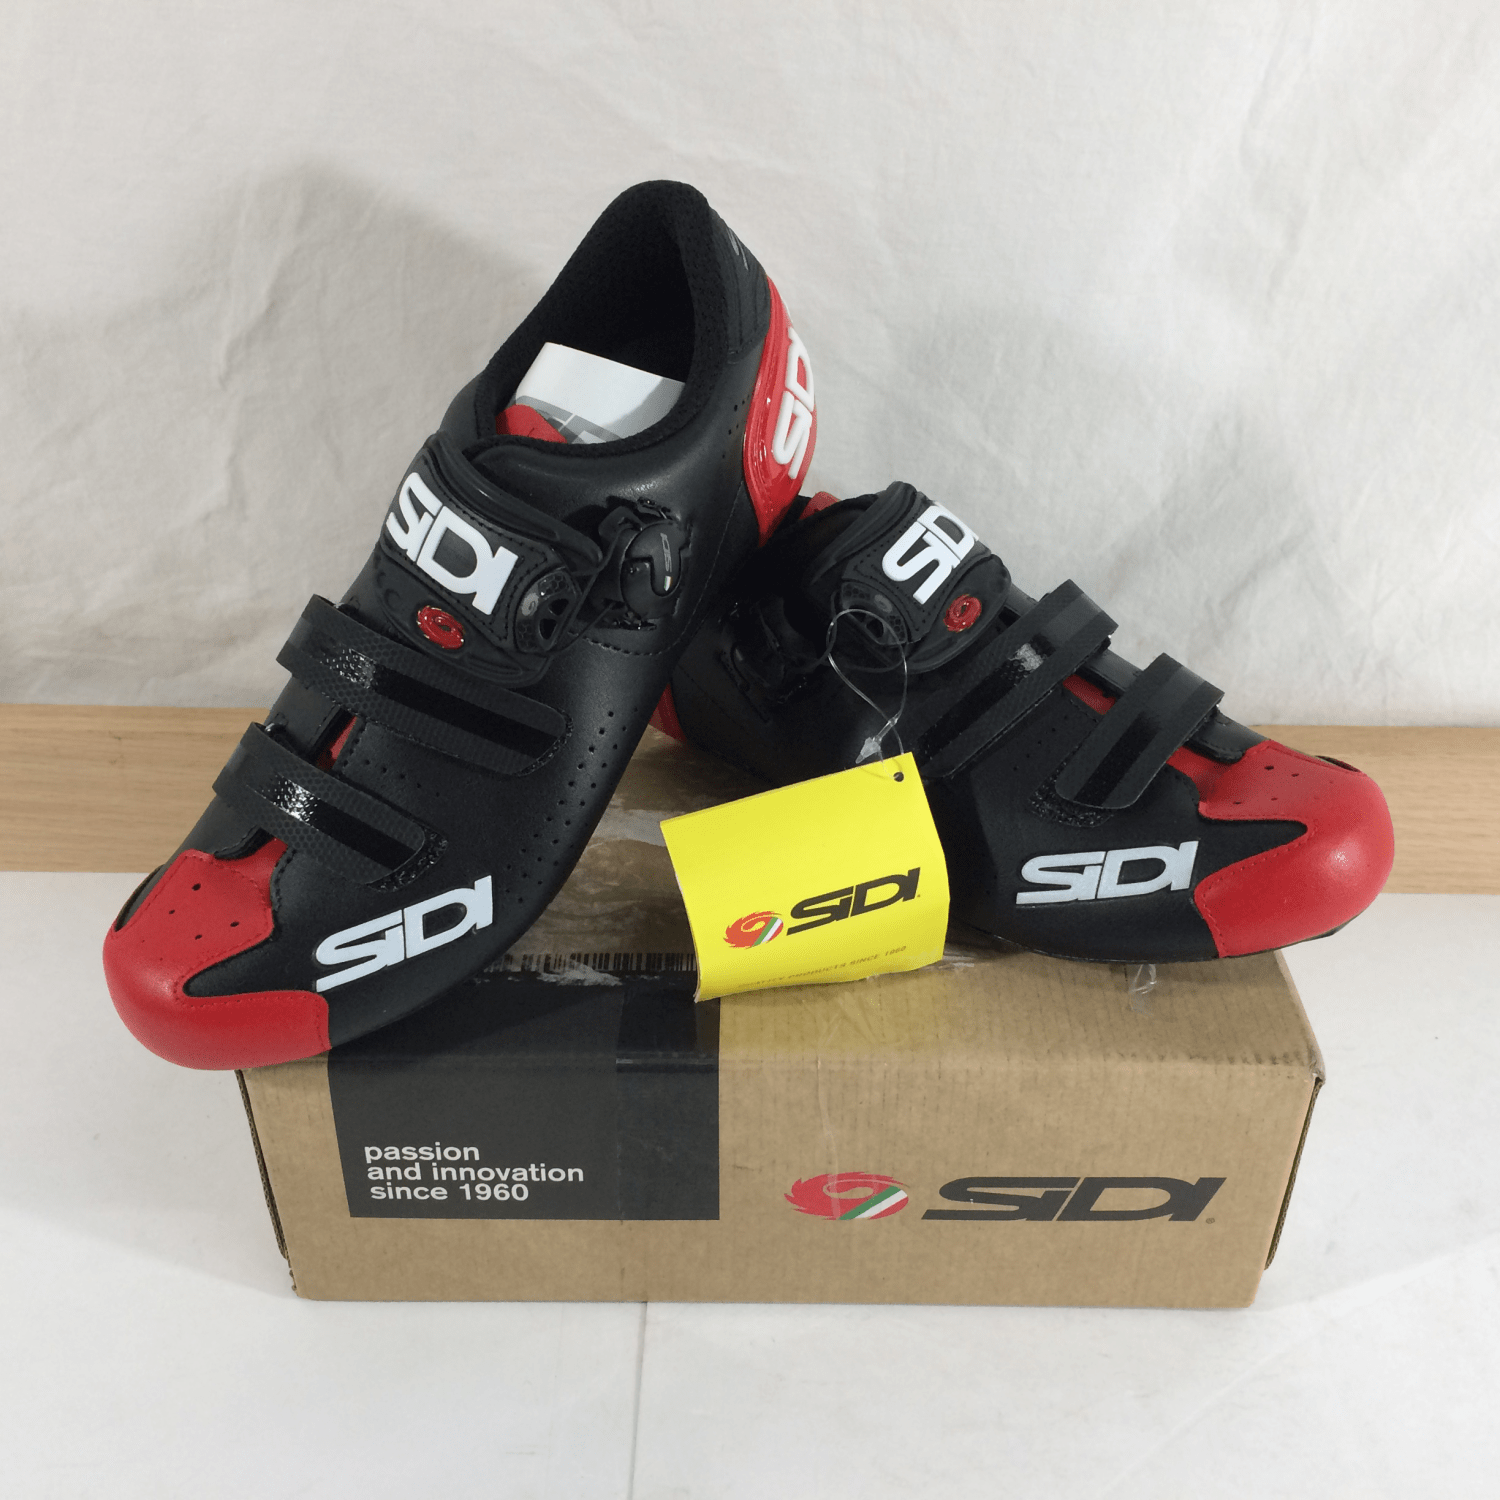 Sidi Alba 2 Men's Road Bike Cycling Shoes, Black/Red, Size 41 